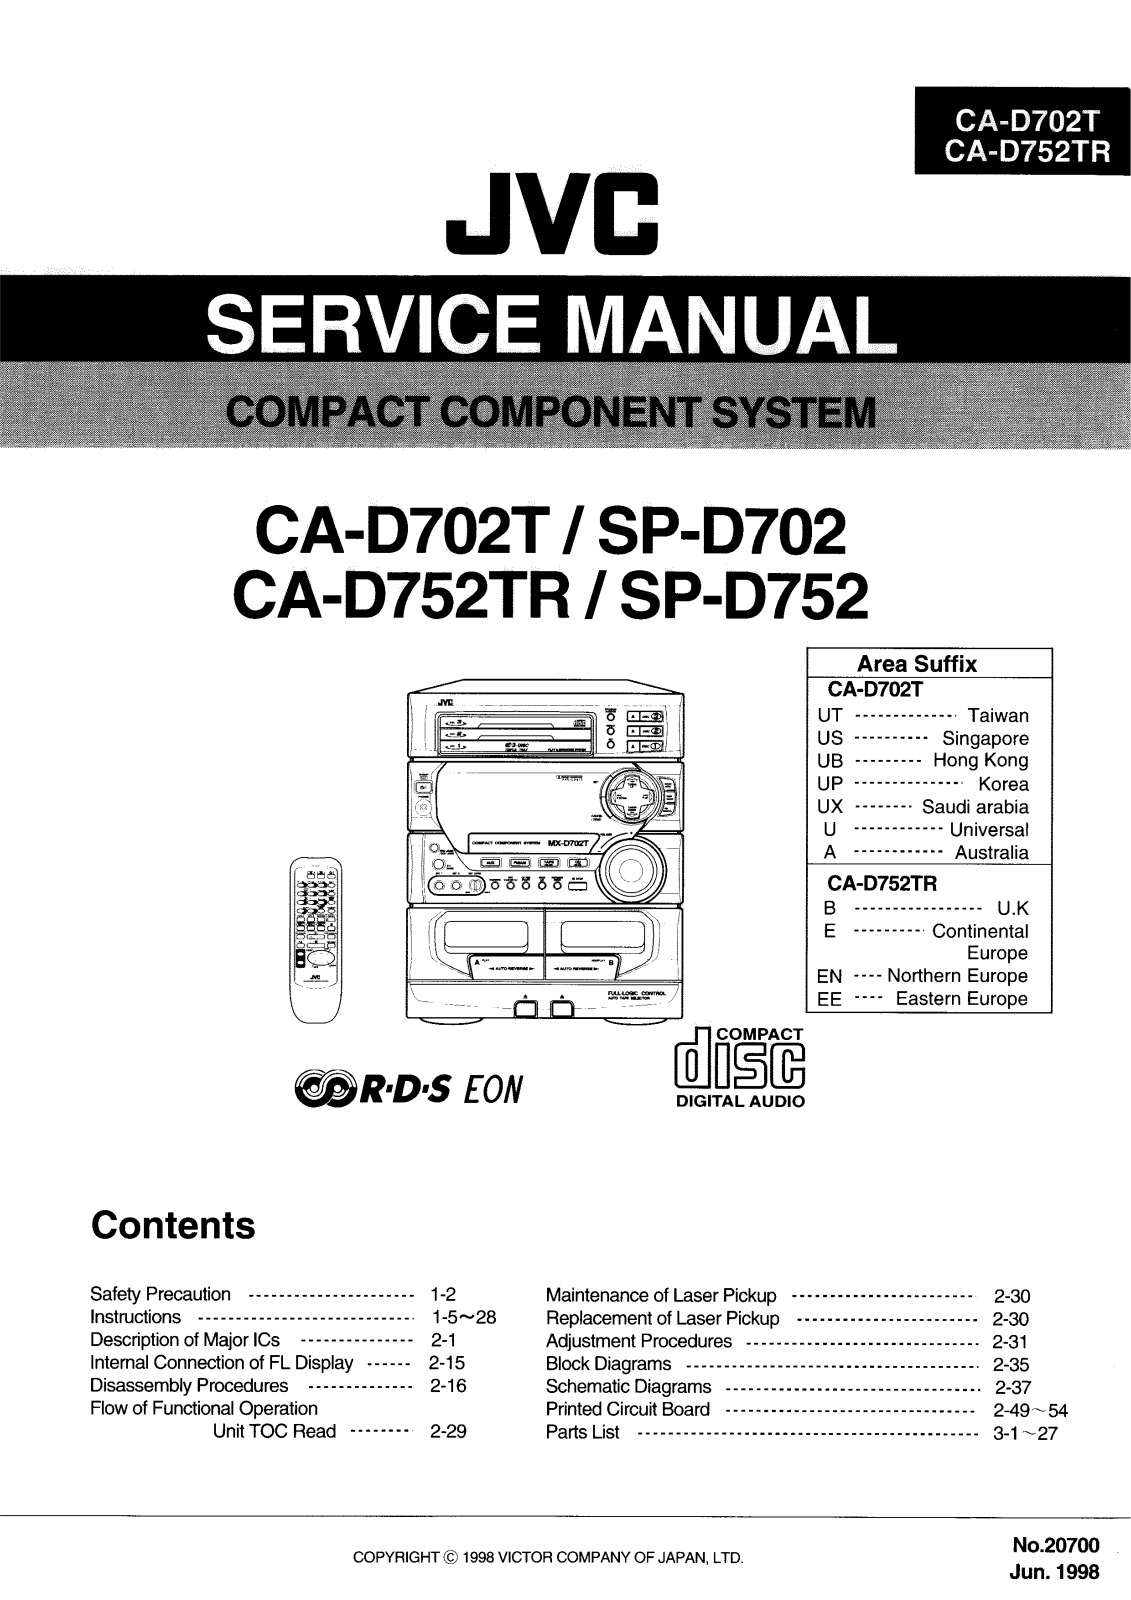 JVC SPD-702, SPD-752, CAD-702-T, CAD-752-TR Service manual